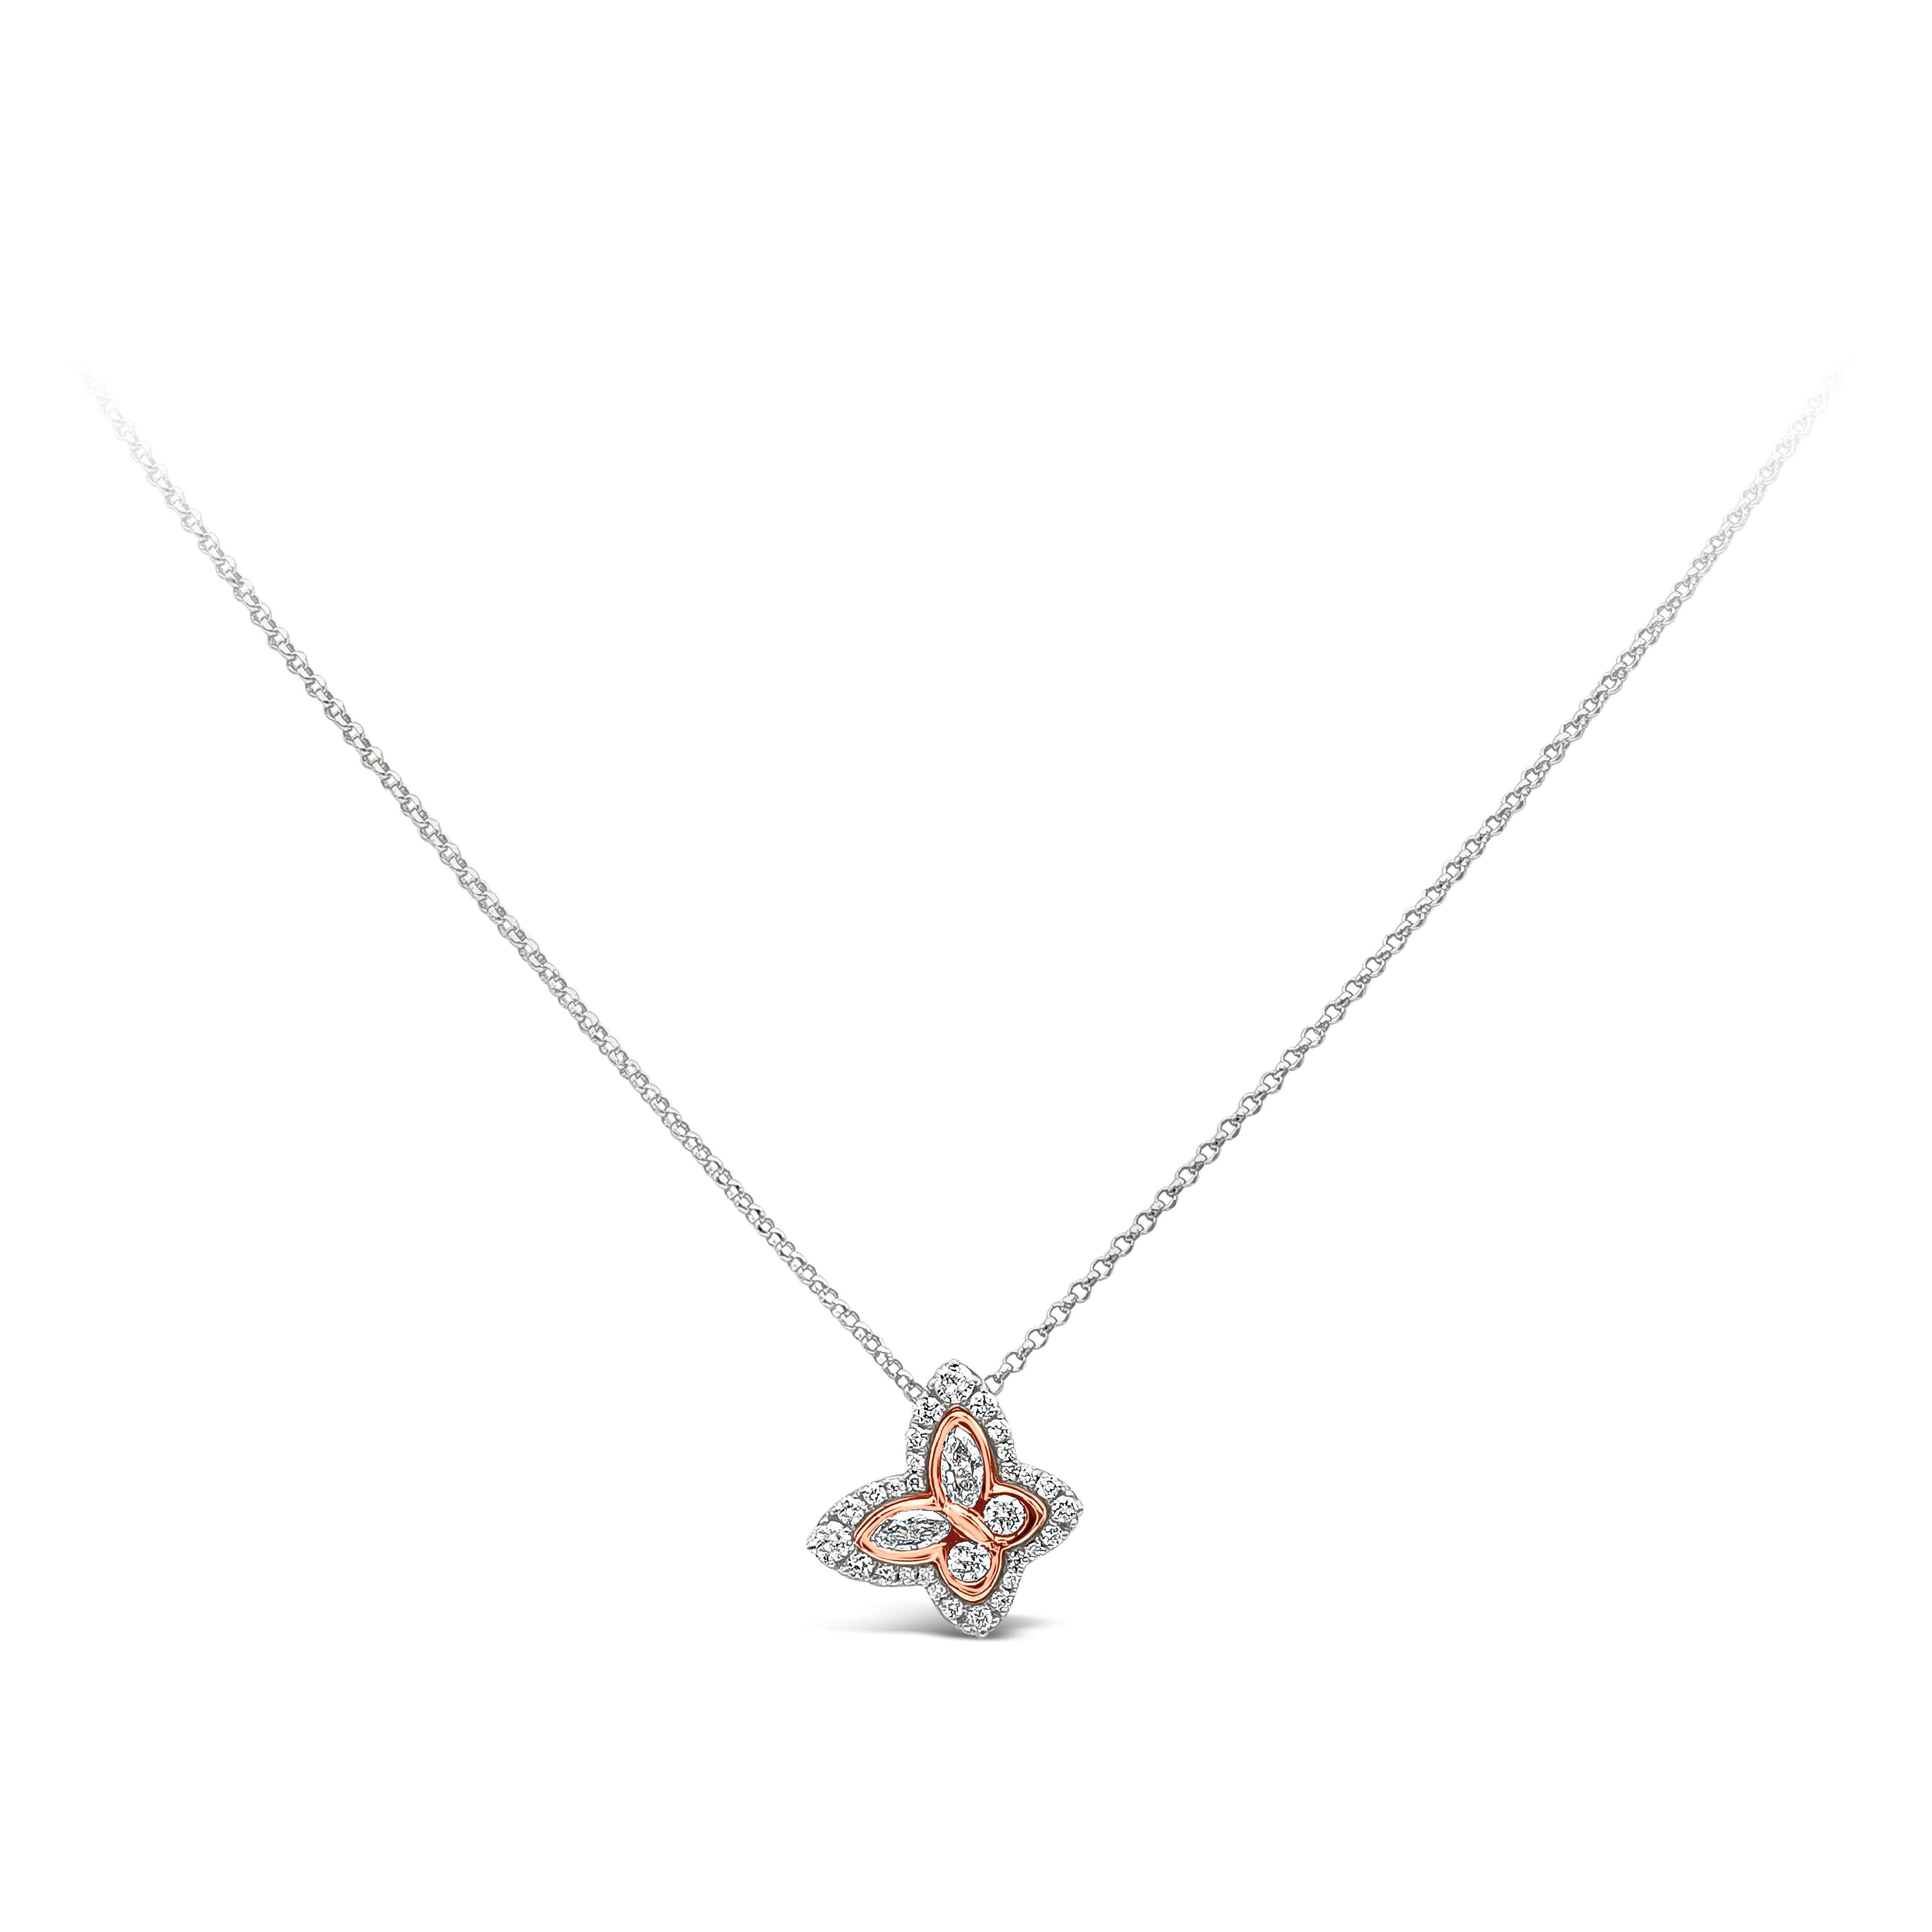 Ce magnifique collier pendentif présente un motif de papillon serti de diamants brillants dans une monture en or rose et en or blanc 18 carats. Les diamants pèsent 0.37 carat au total. Suspendu à une chaîne en or blanc 18 carats.

Roman Malakov est